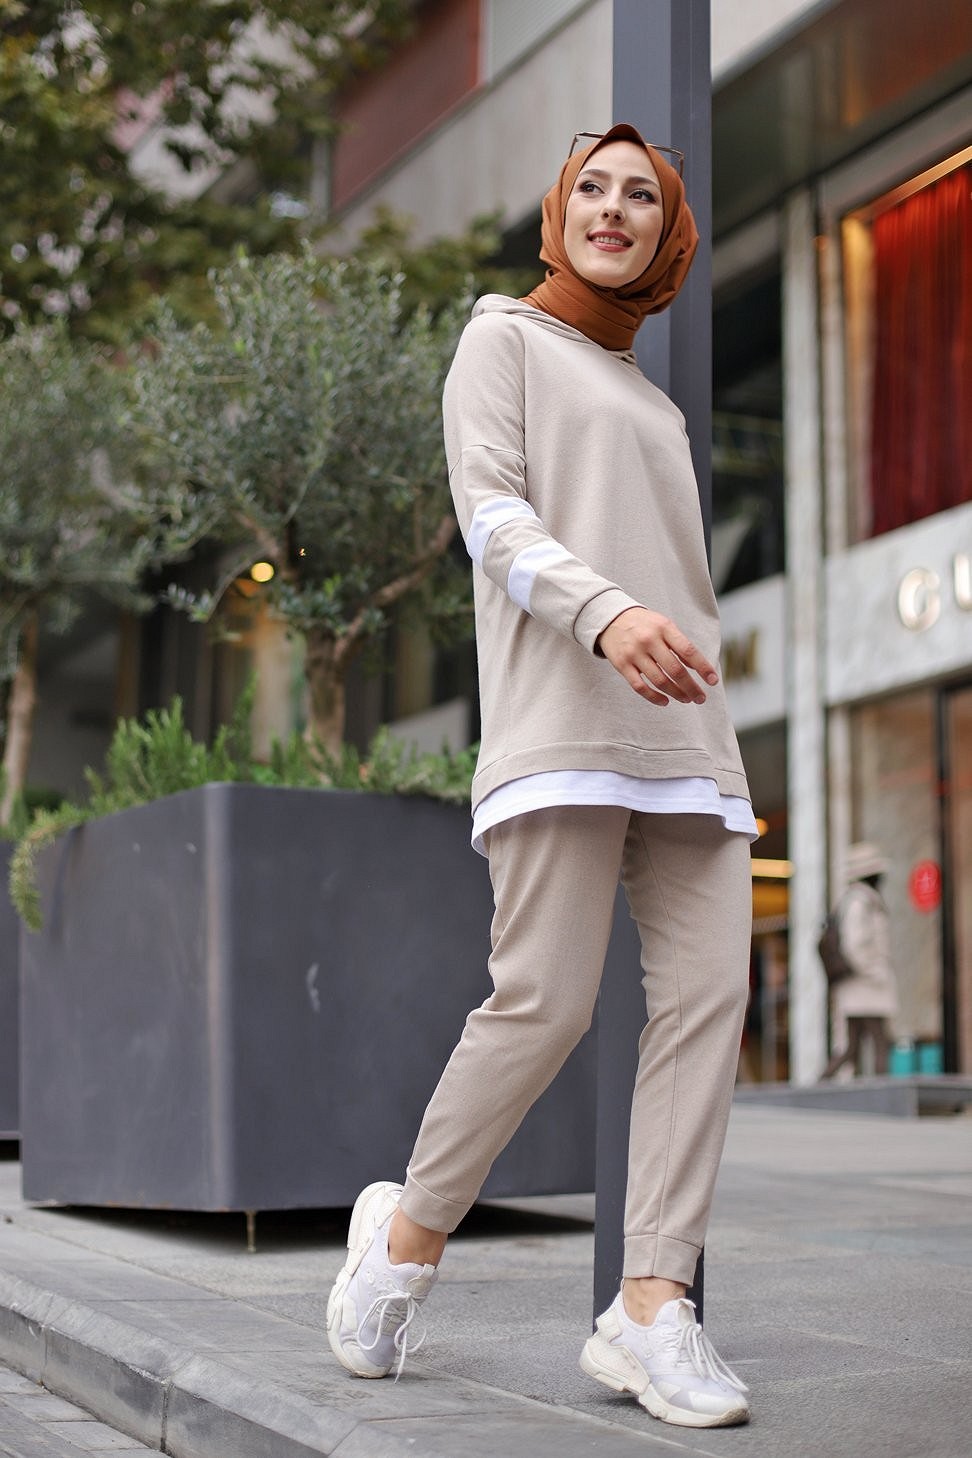 Survêtement femme (Ensemble sport Sweat à capuche et Pantalon) - Couleur  Blanc et Beige - Prêt à porter et accessoires